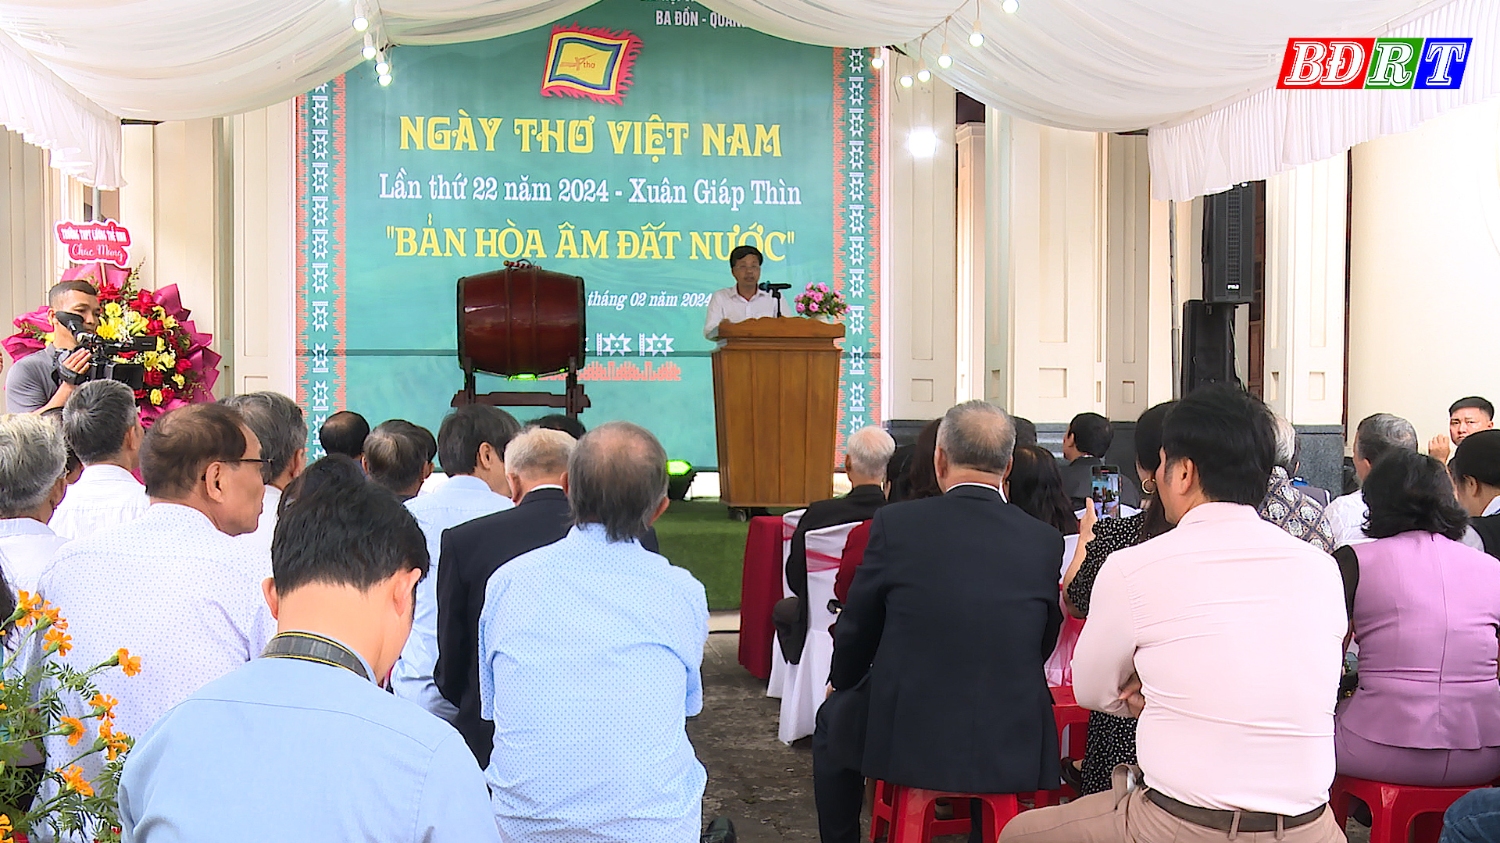 Chương trình Ngày thơ Việt Nam lần thứ 22 năm 2024 với chủ đề “Bản hòa âm đất nước”